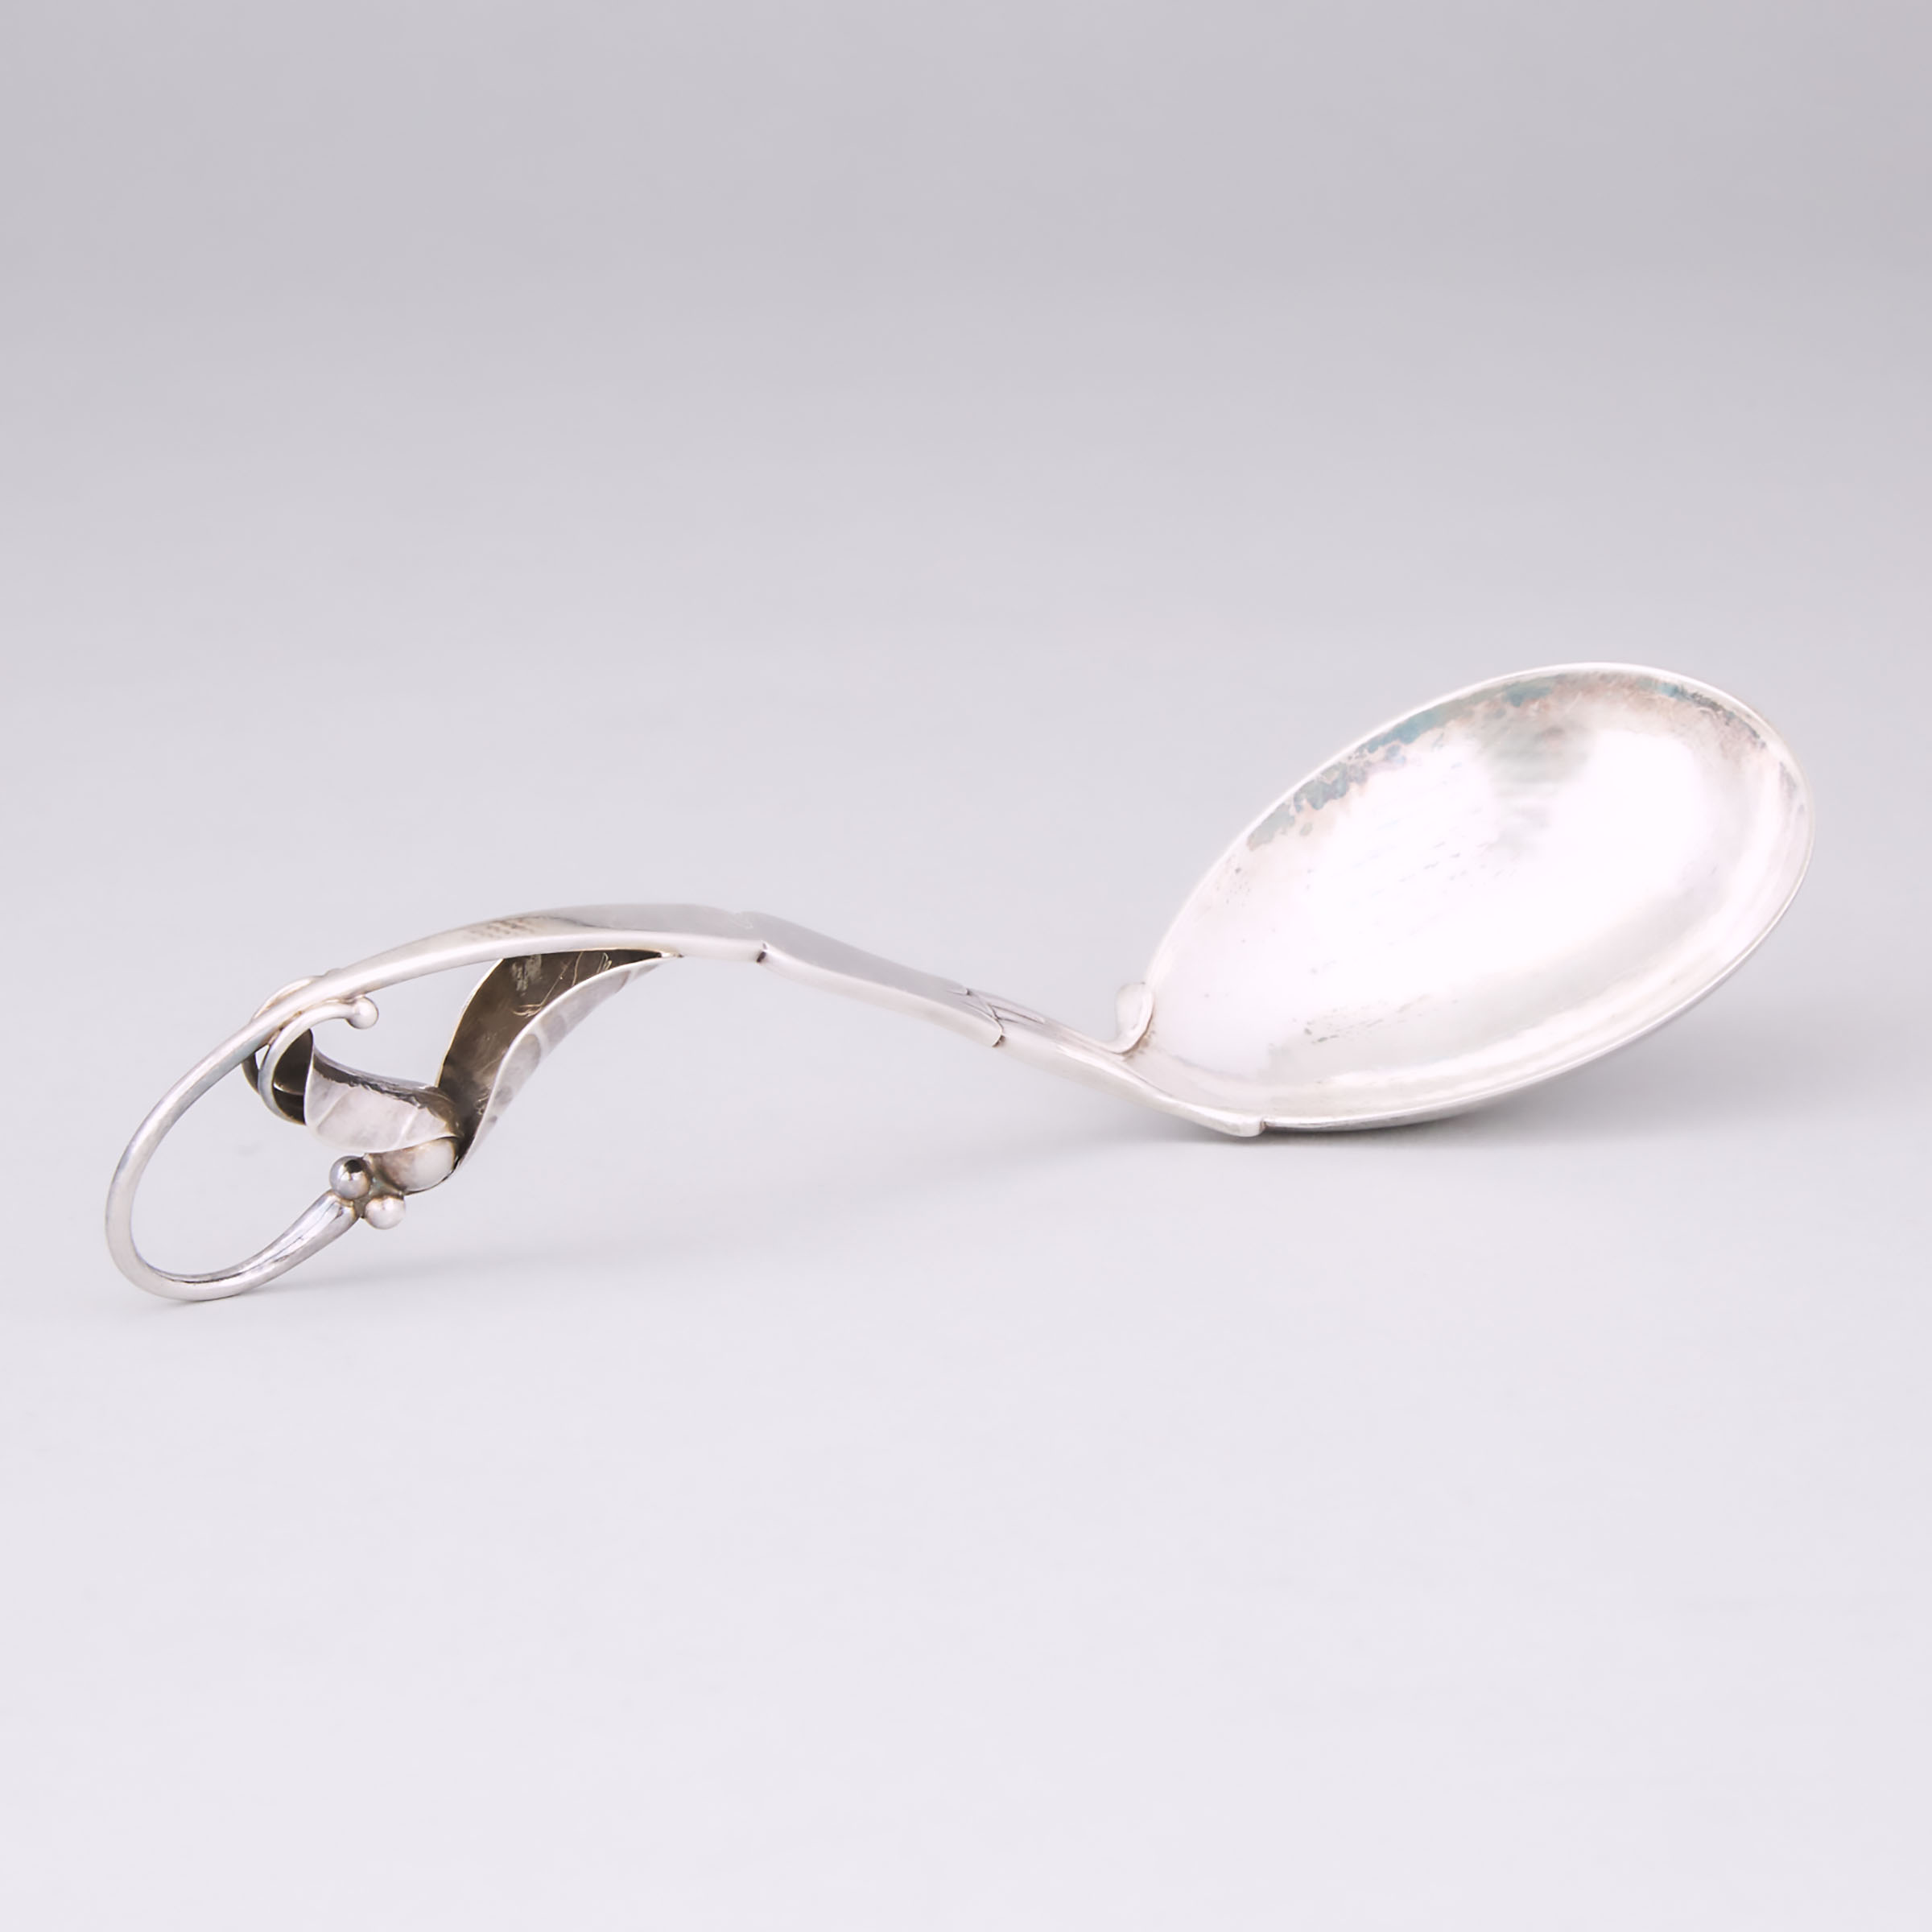 Danish Silver Serving Spoon, #141, Georg Jensen, Copenhagen, post-1945